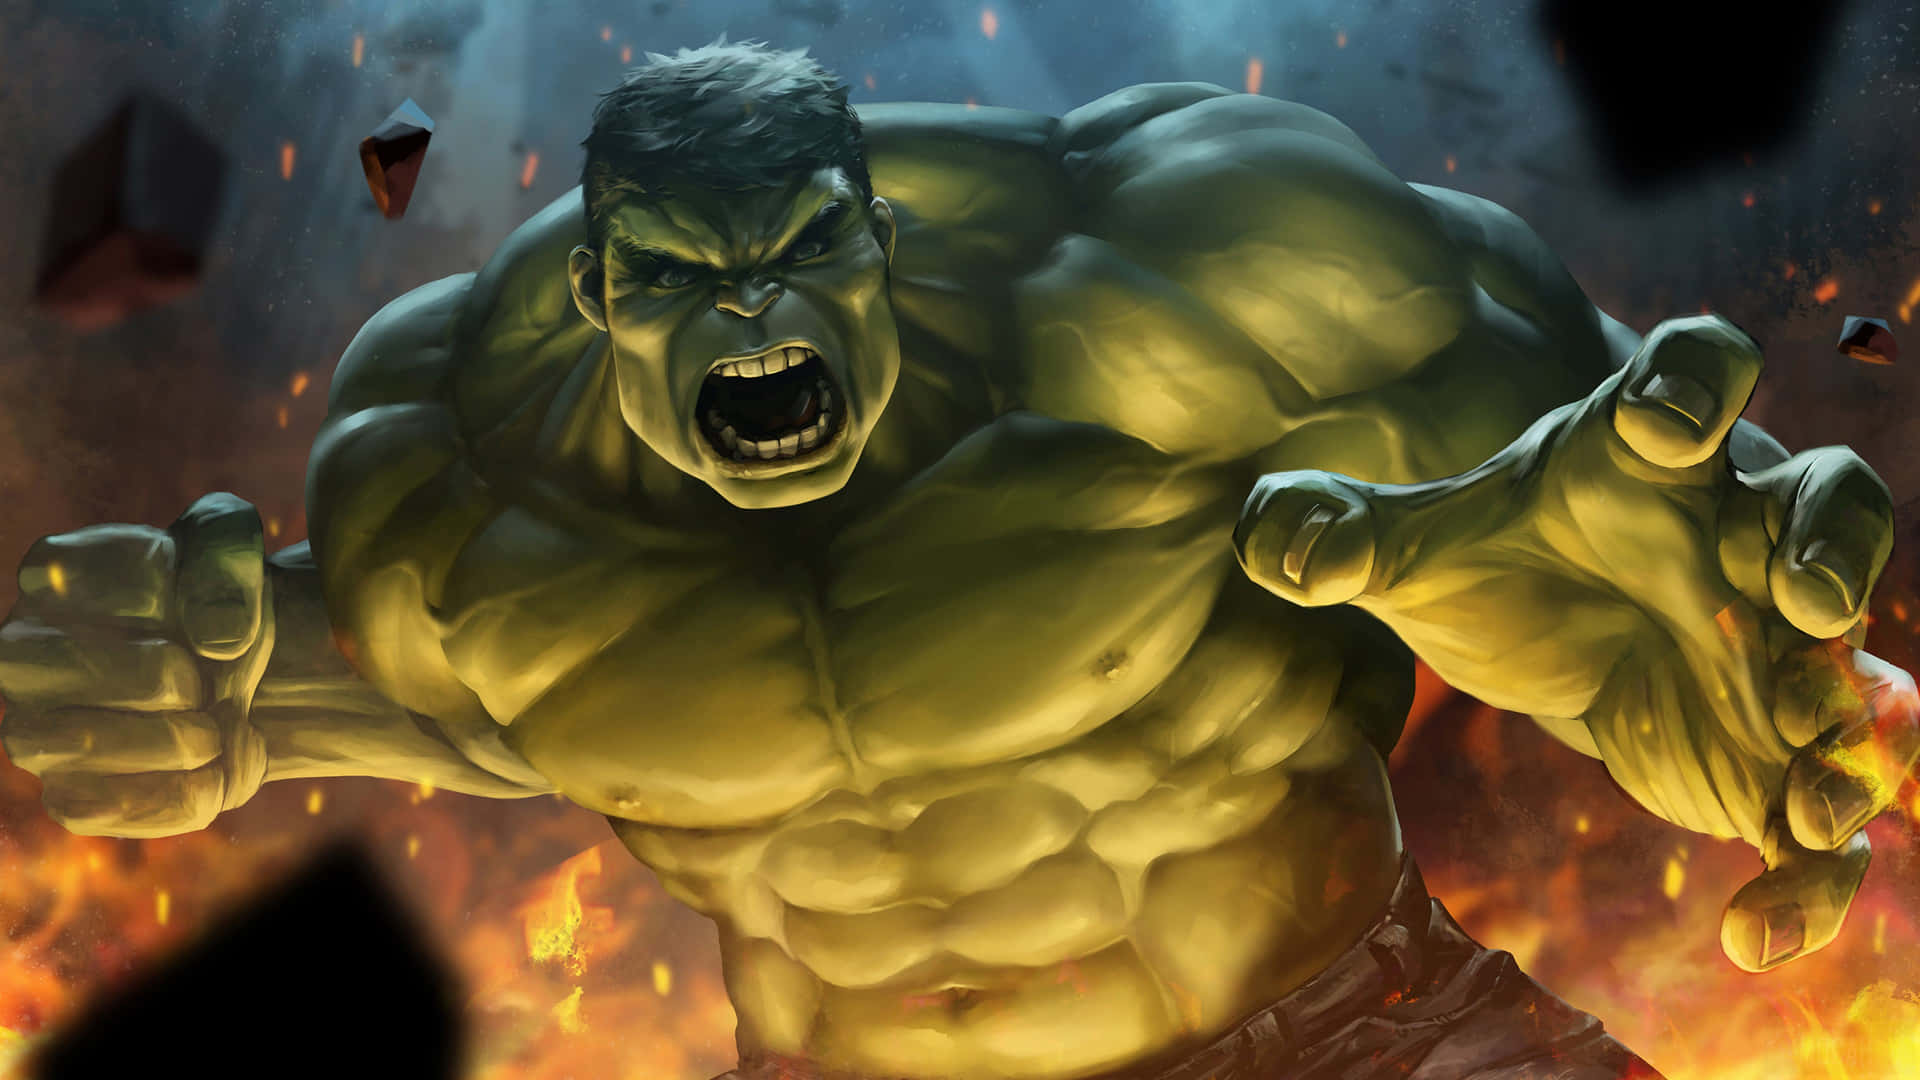 Denutrolige Hulk Ødelægger Byen.